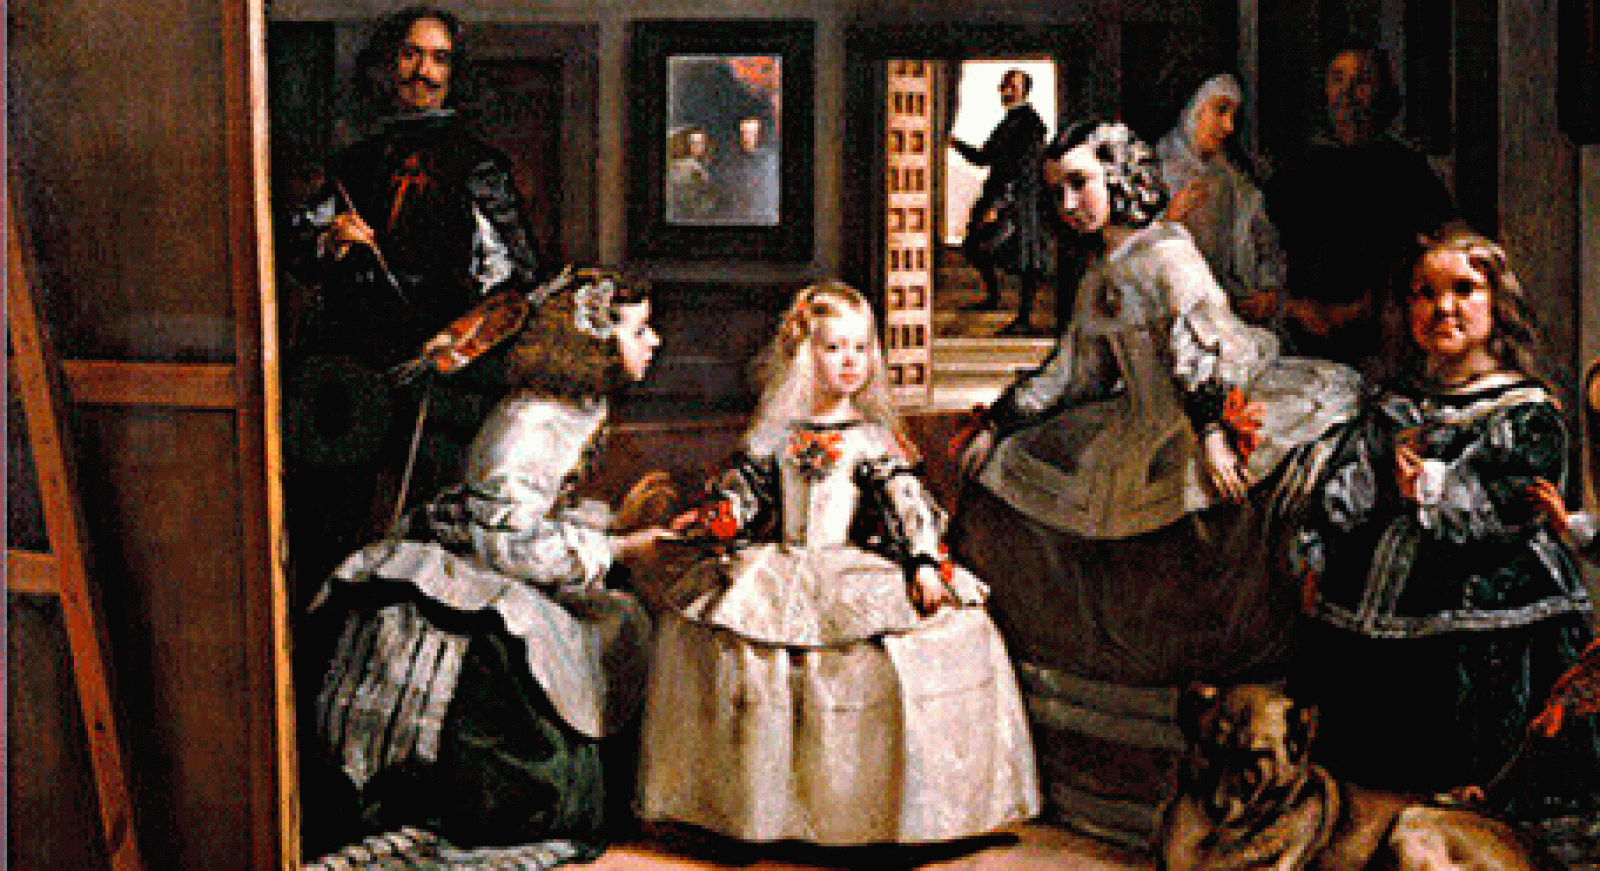 La aventura del saber - 'Las Meninas' de Velázquez